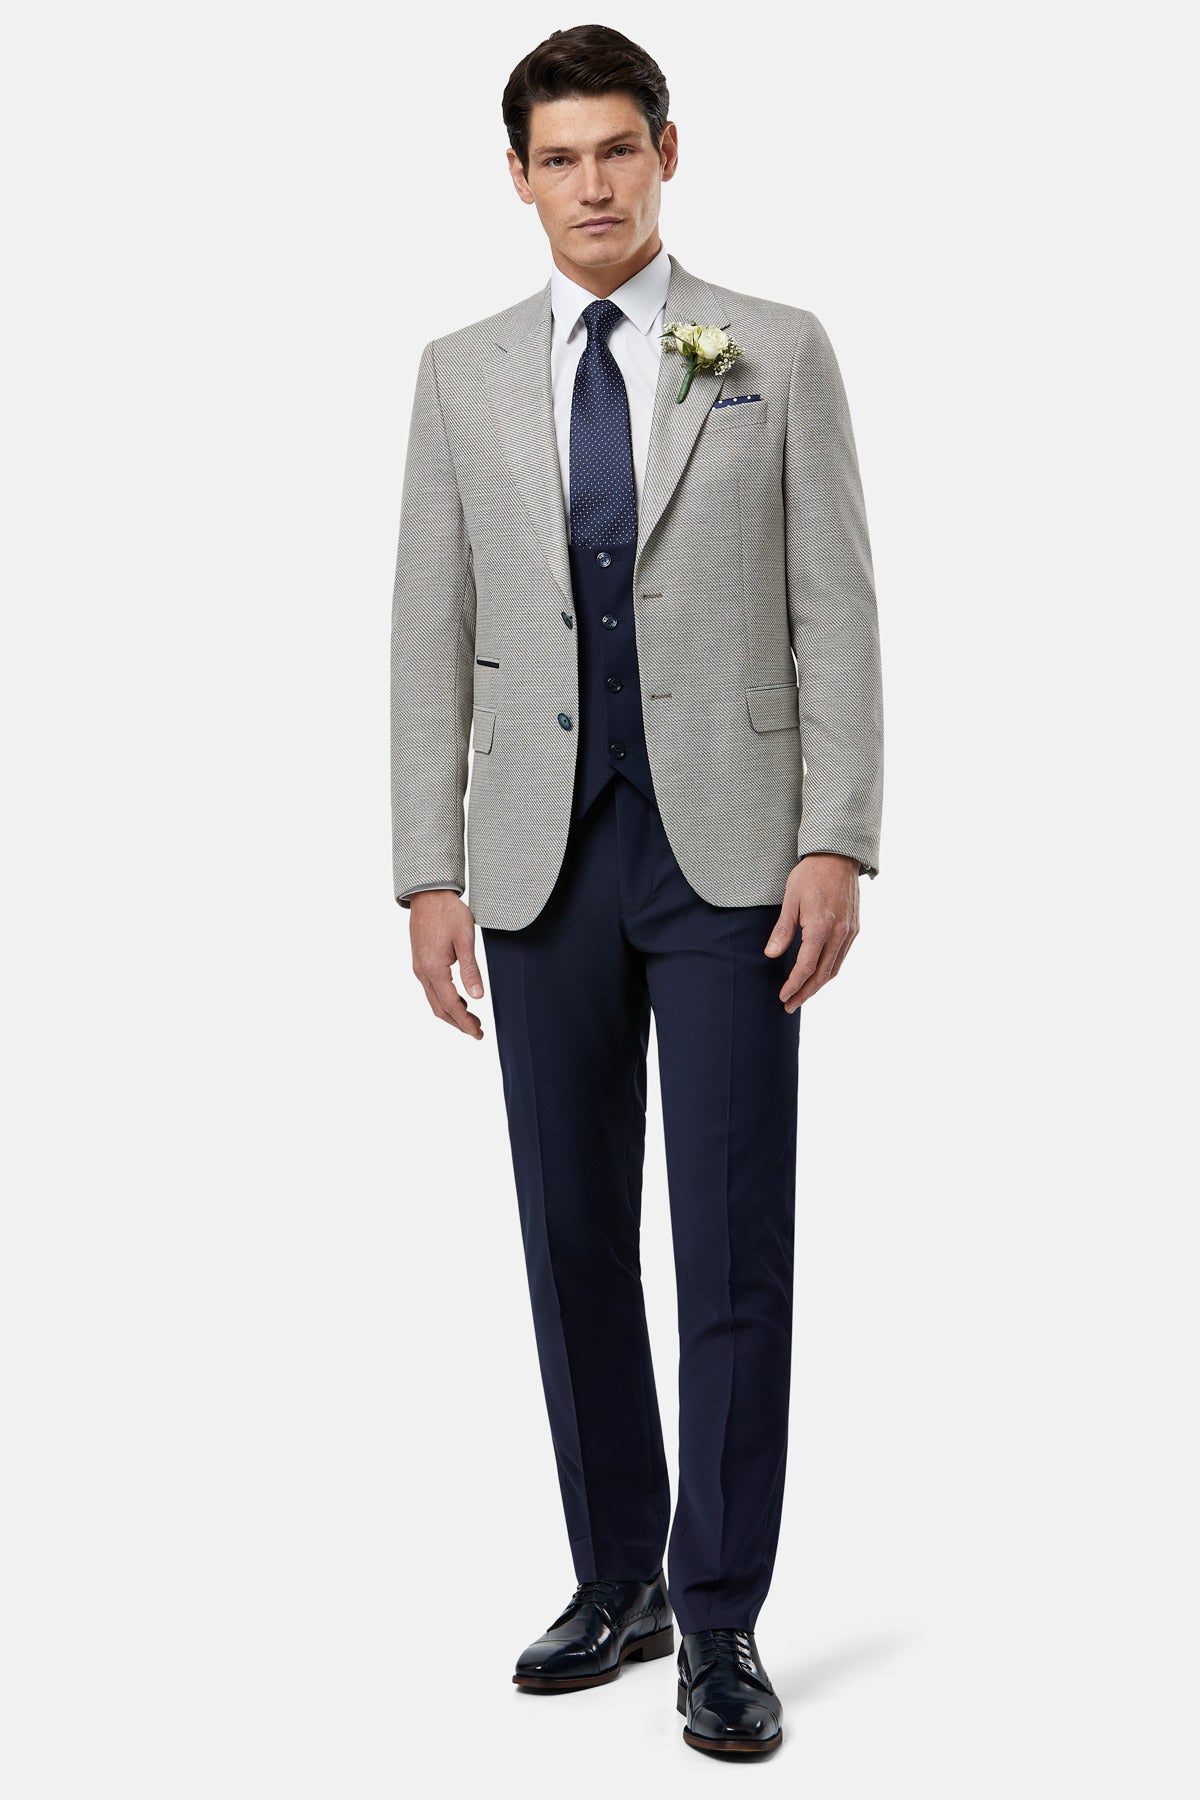 Harold Beige Wedding Suit By Benetti Menswear 